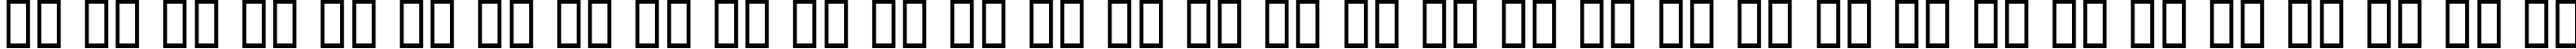 Пример написания русского алфавита шрифтом Diager